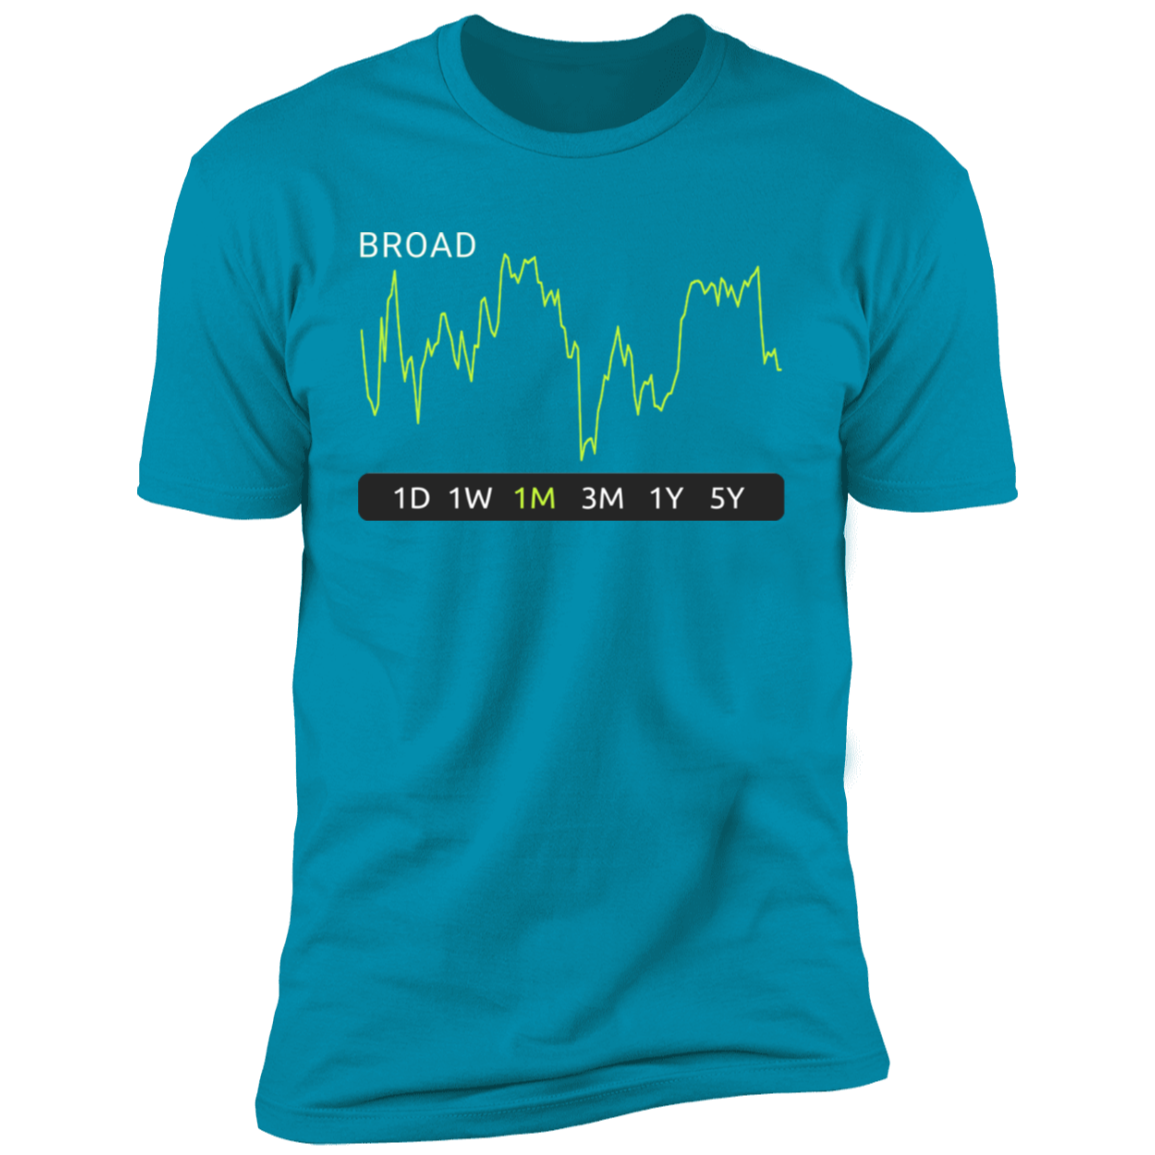 BROAD Stock 1m Premium T-Shirt